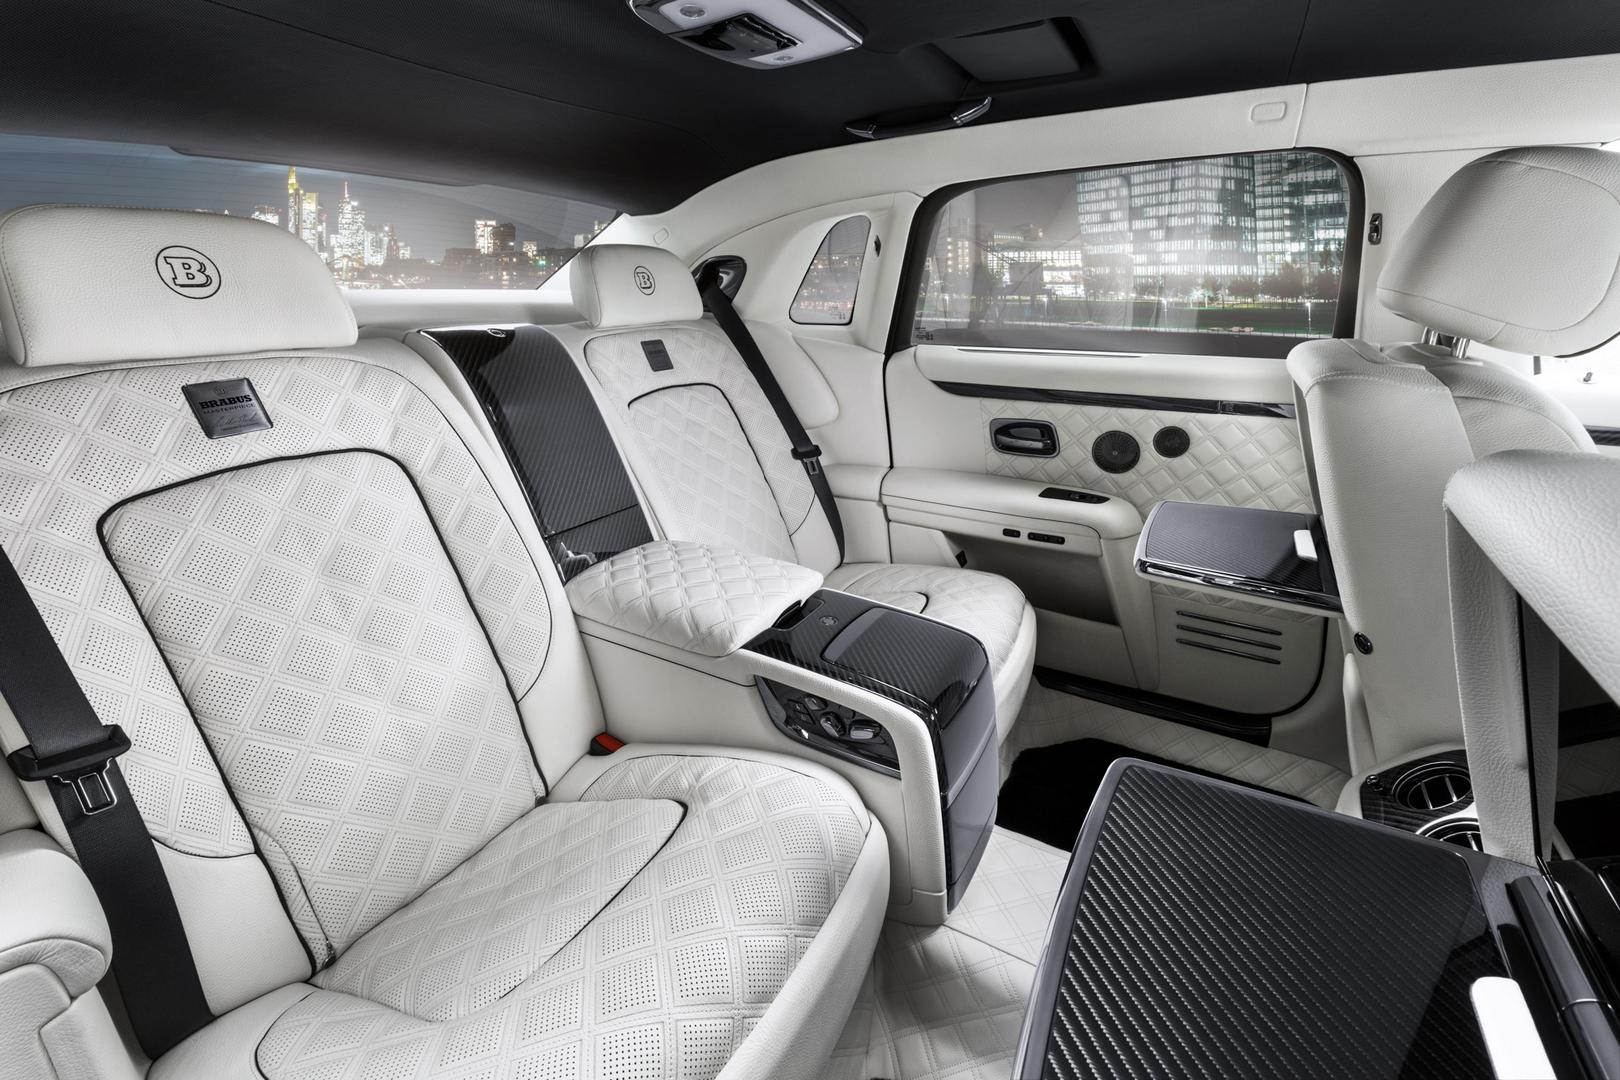 Brabus Rolls-Royce Ghost rear seats